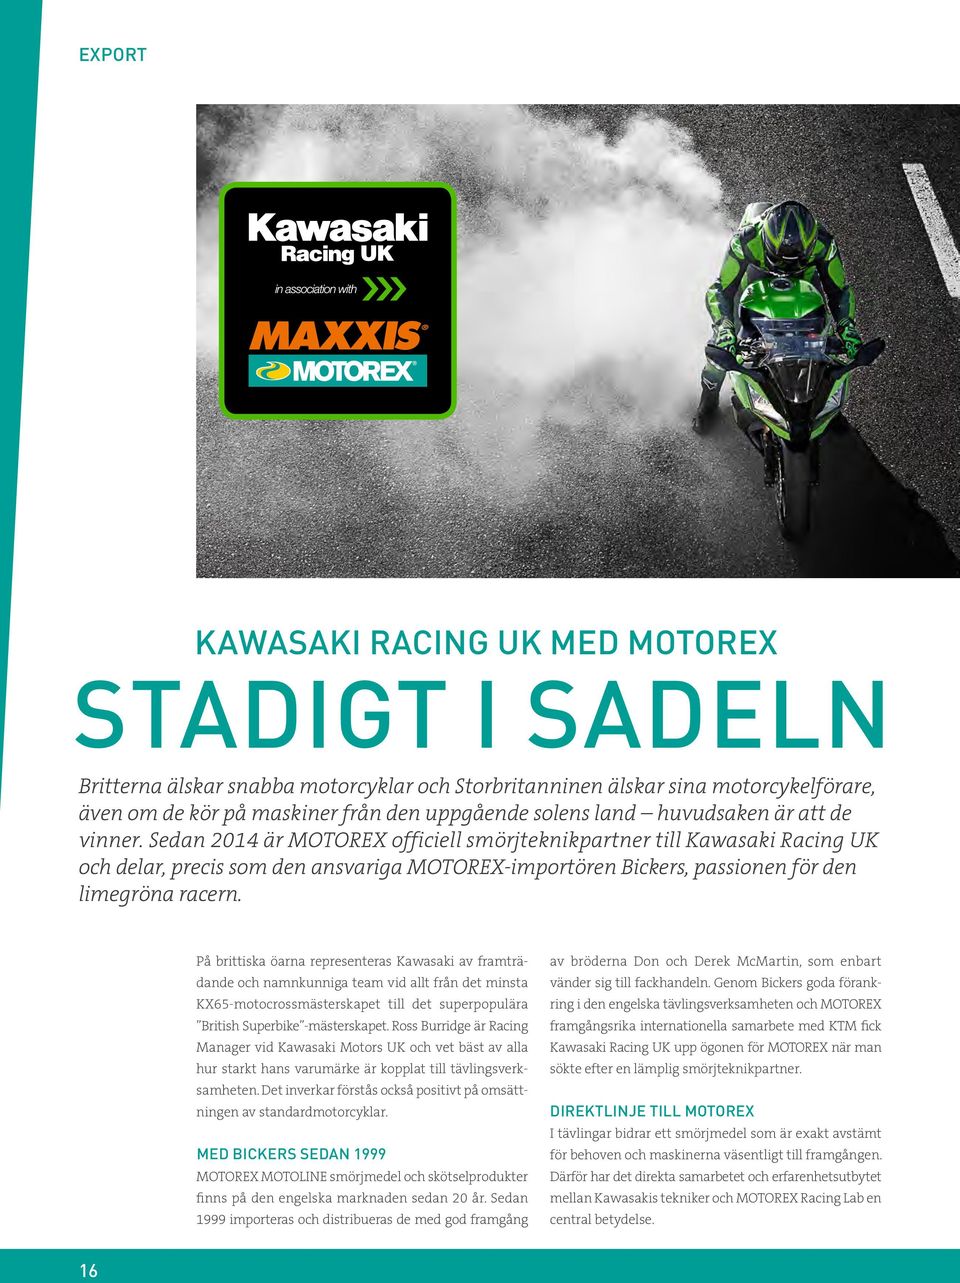 Sedan 2014 är MOTOREX officiell smörjteknikpartner till Kawasaki Racing UK och delar, precis som den ansvariga MOTOREX-importören Bickers, passionen för den limegröna racern.